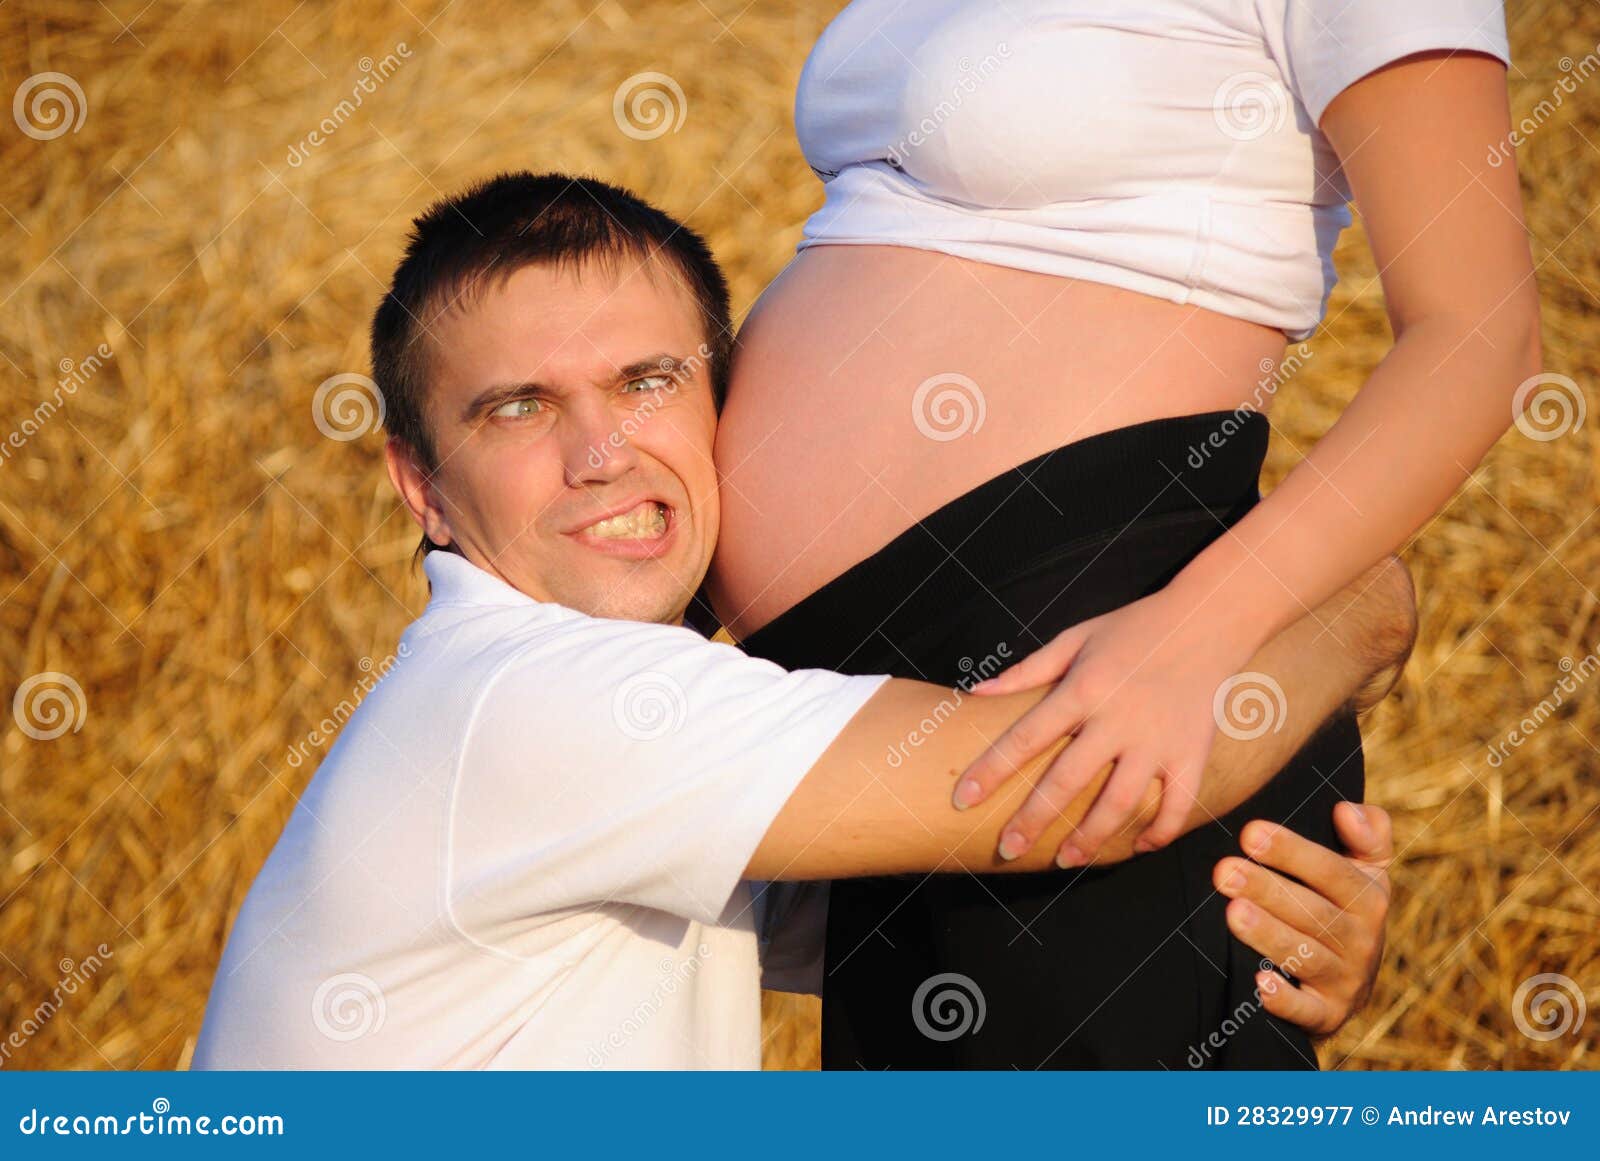 Обнимает беременную